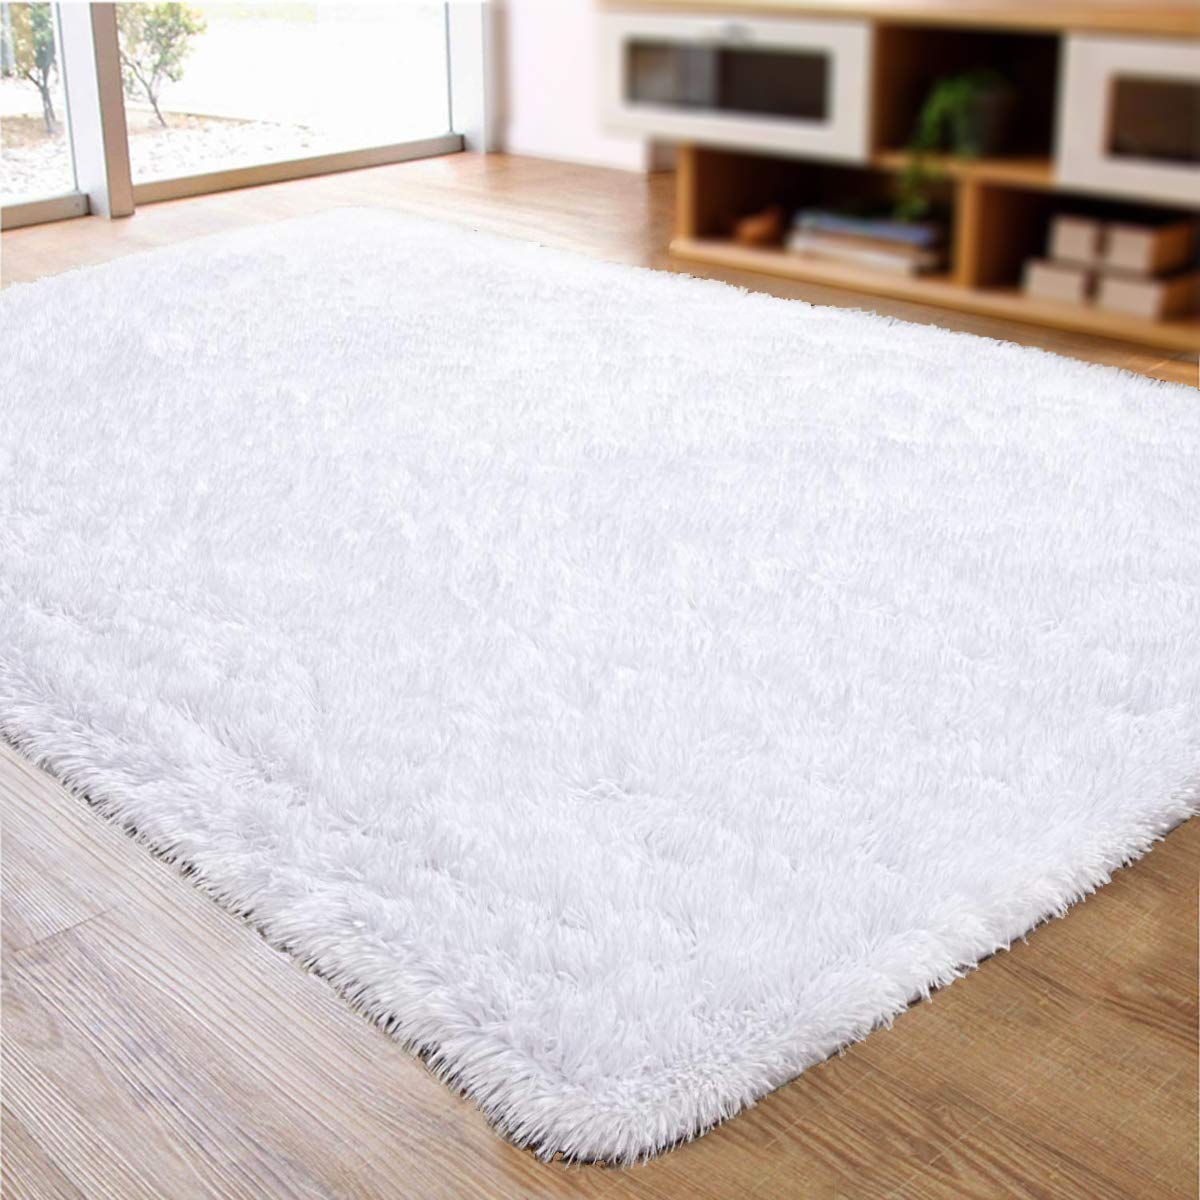 М'які волохаті килими Пухнастий килим для приміщень Сучасні плюшеві килимки для вітальні, спальні, дитячої кімнати, домашнього декору